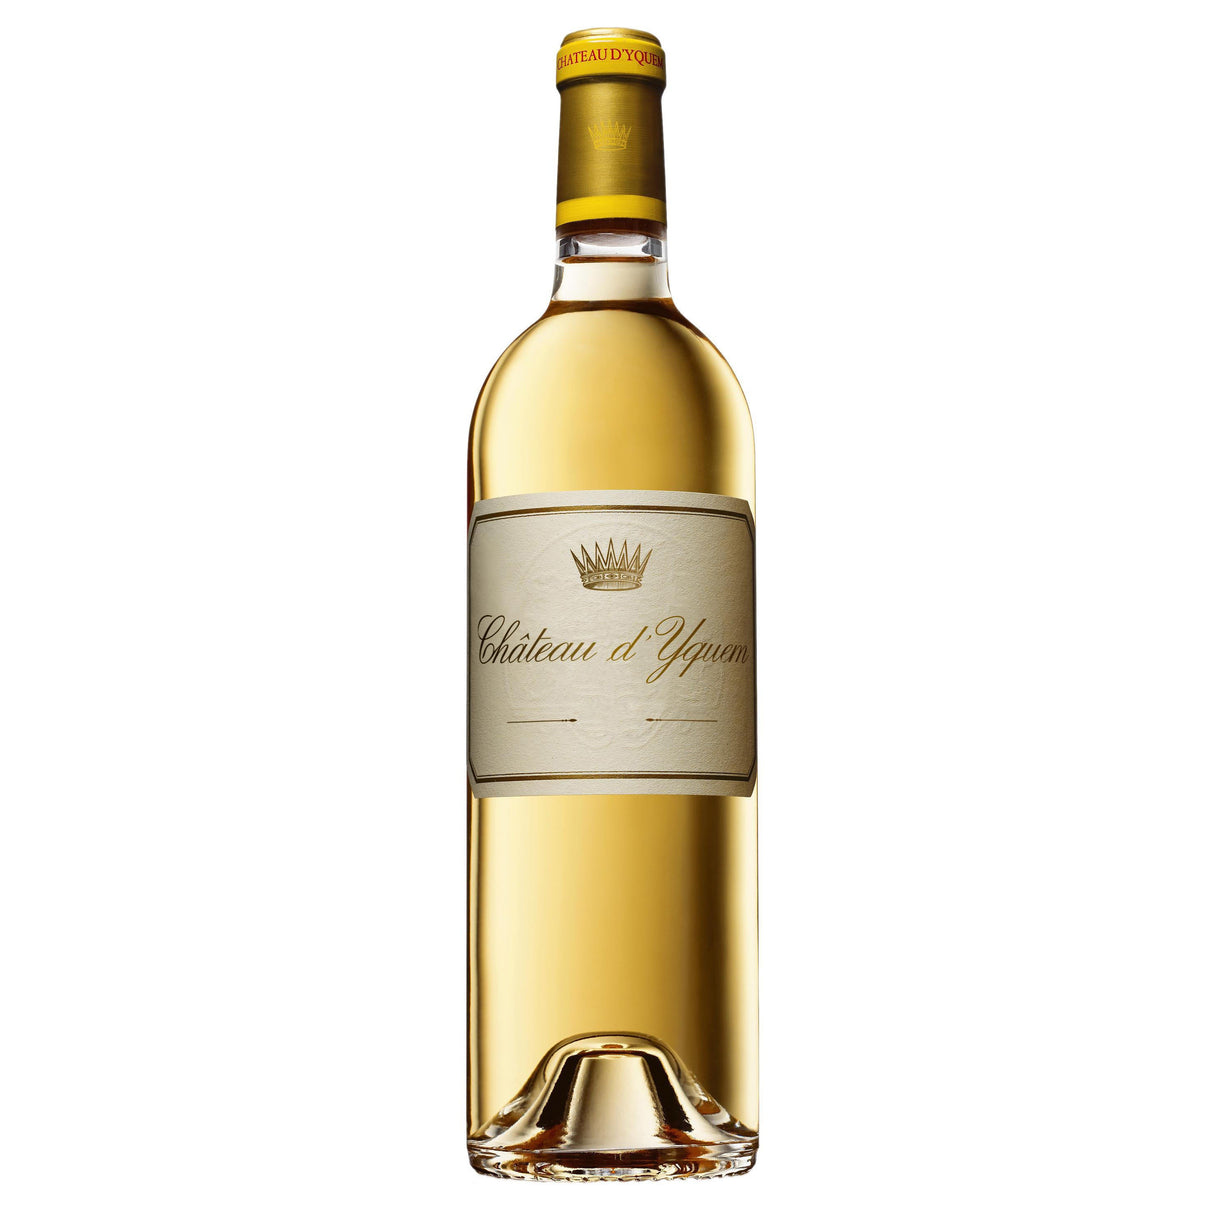 Chateau d’Yquem, 1er Supérieur G.C.C, 1855 Sauternes 1.5L 2010-Dessert, Sherry & Port-World Wine